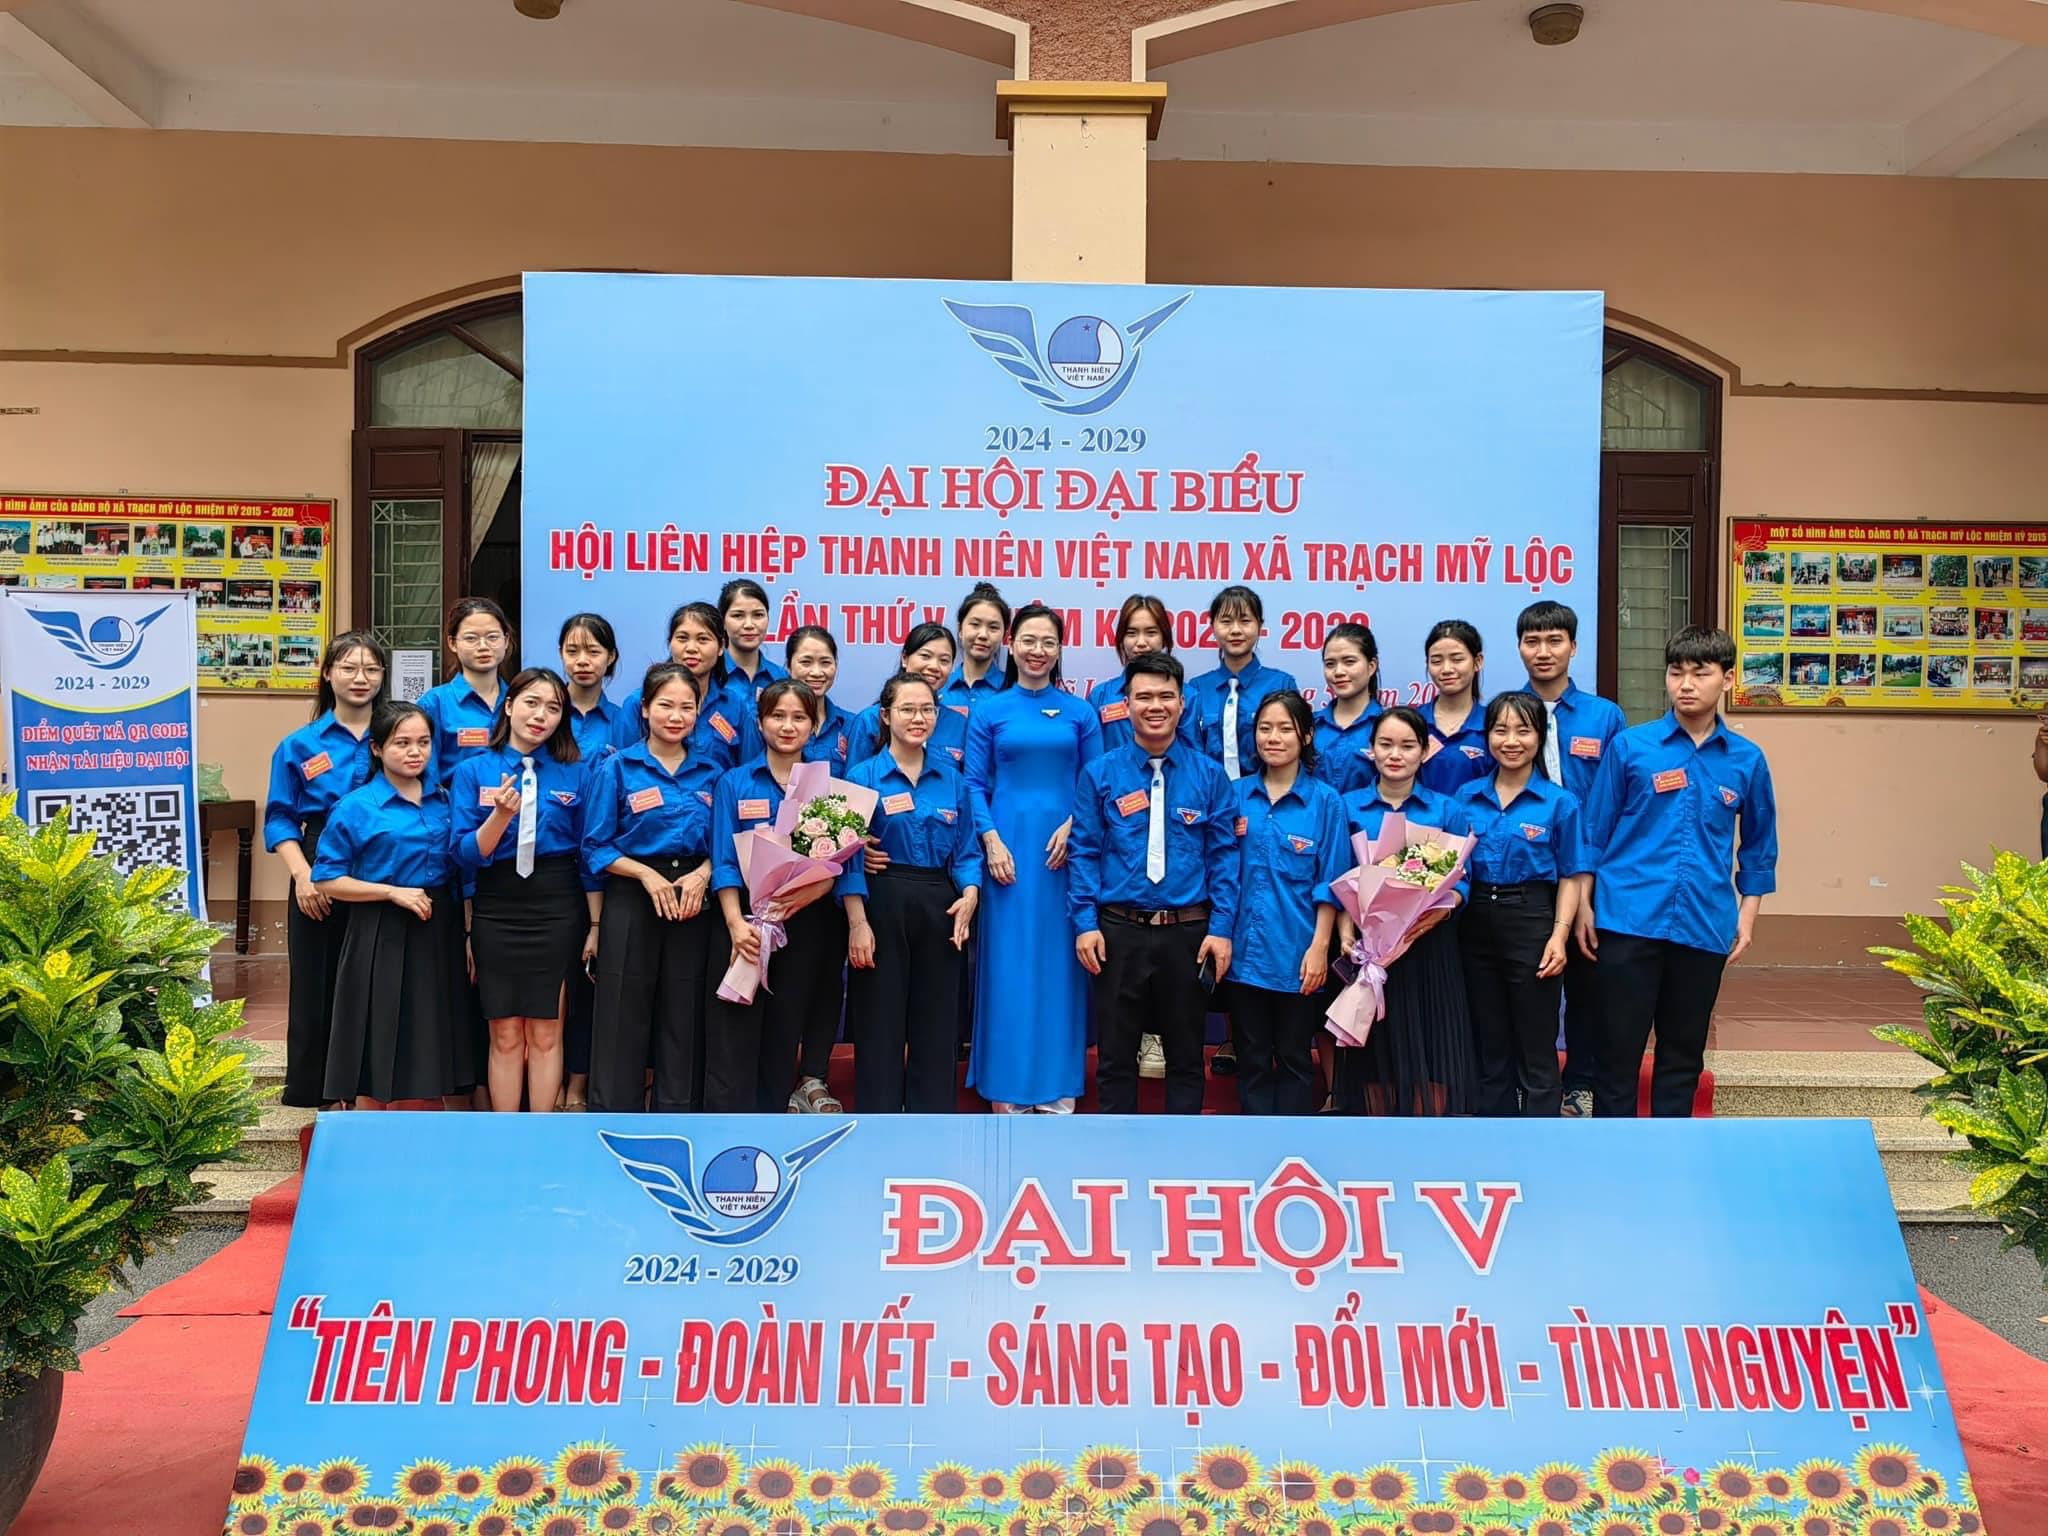 Hội LHTN Việt Nam xã Trạch Mỹ Lộc tổ chức thành công Đại hội đại biểu Hội LHTN Việt Nam xã Trạch Mỹ Lộc lần thứ 5, nhiệm kỳ 2024-2029.